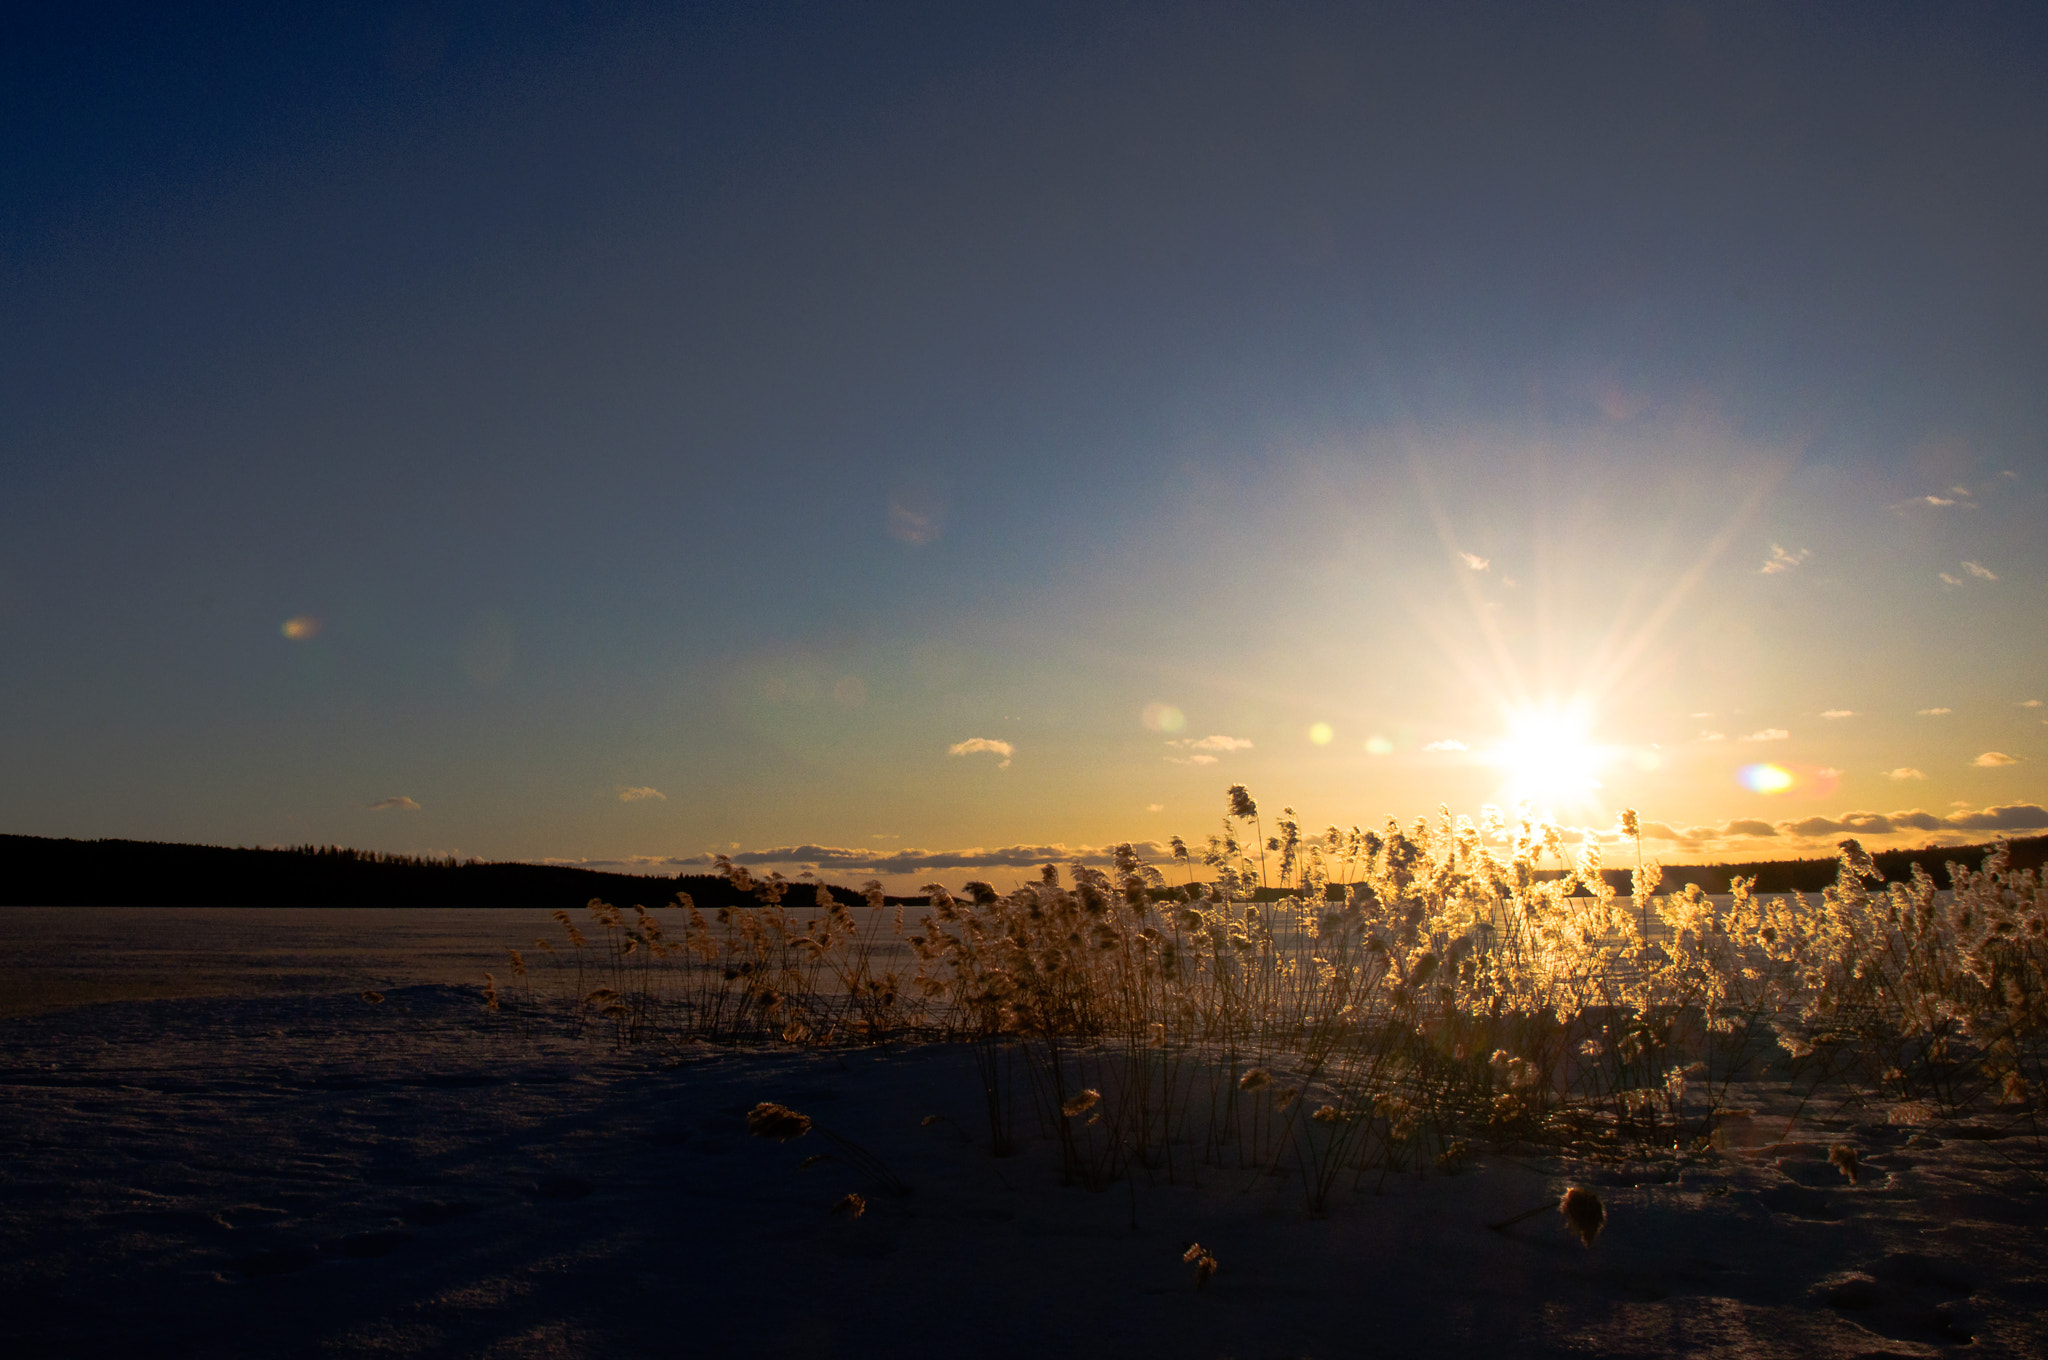 Nikon D90 + Nikon AF-S DX Nikkor 18-70mm F3.5-4.5G ED-IF sample photo. Sunset over frozen lake photography